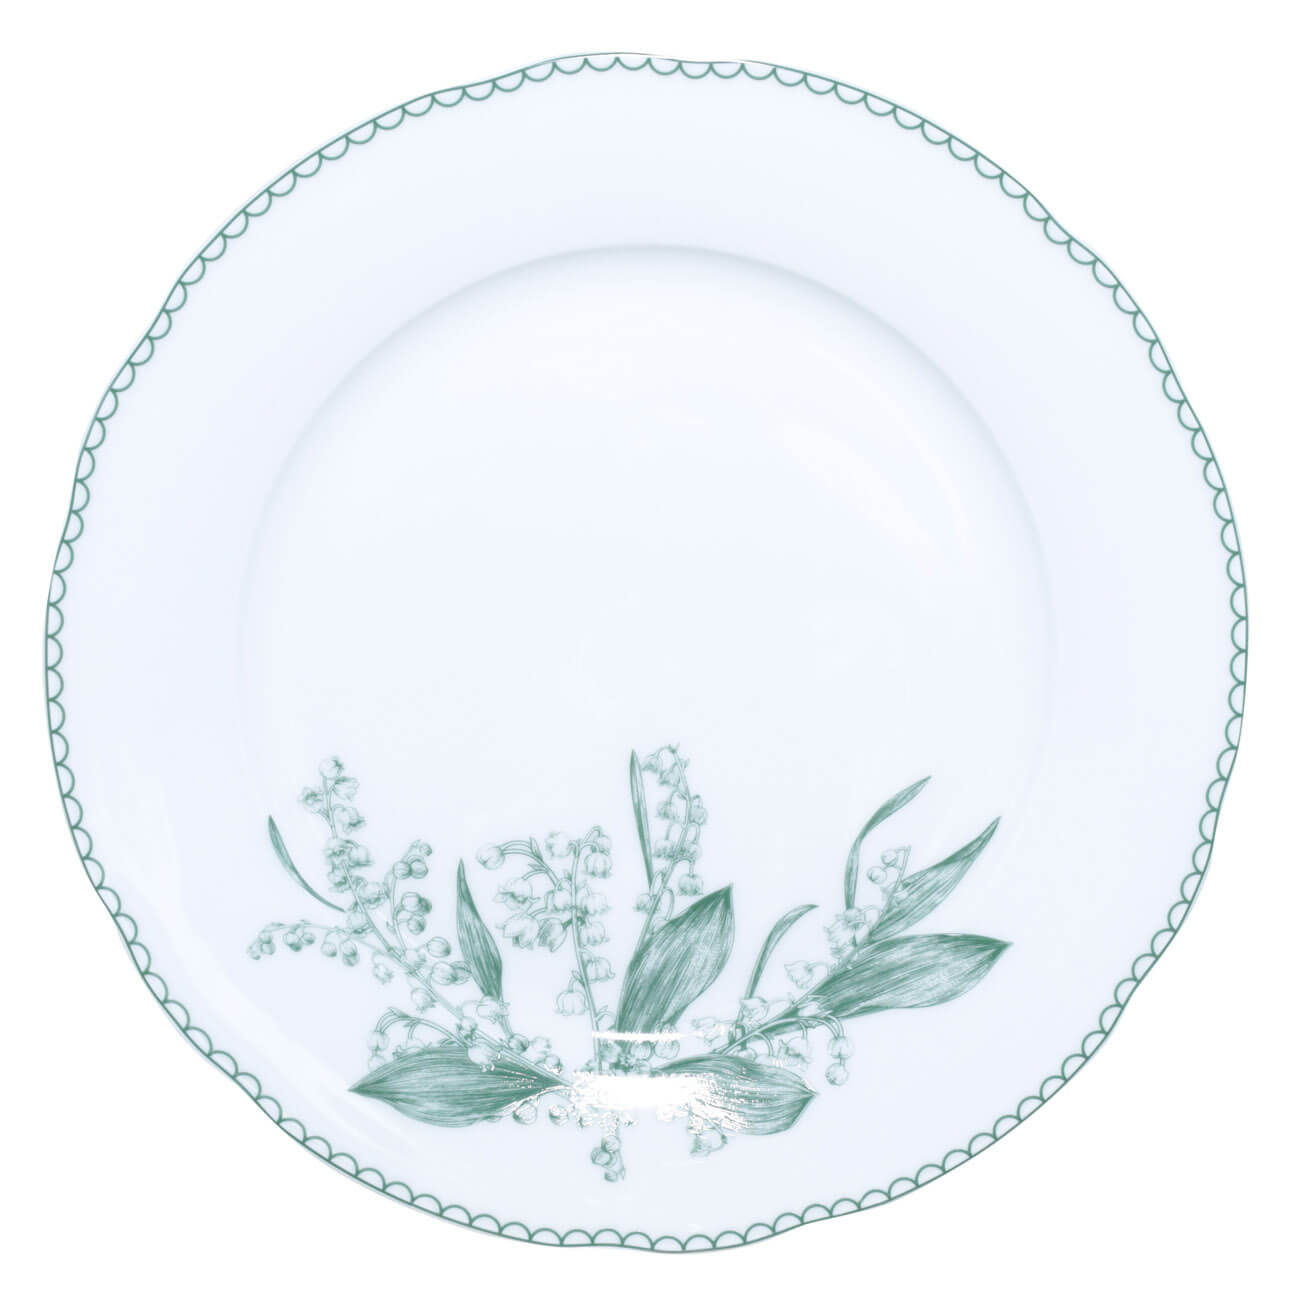 Тарелка обеденная, 27 см, фарфор F, белая, Весенние ландыши, May-lily изображение № 1